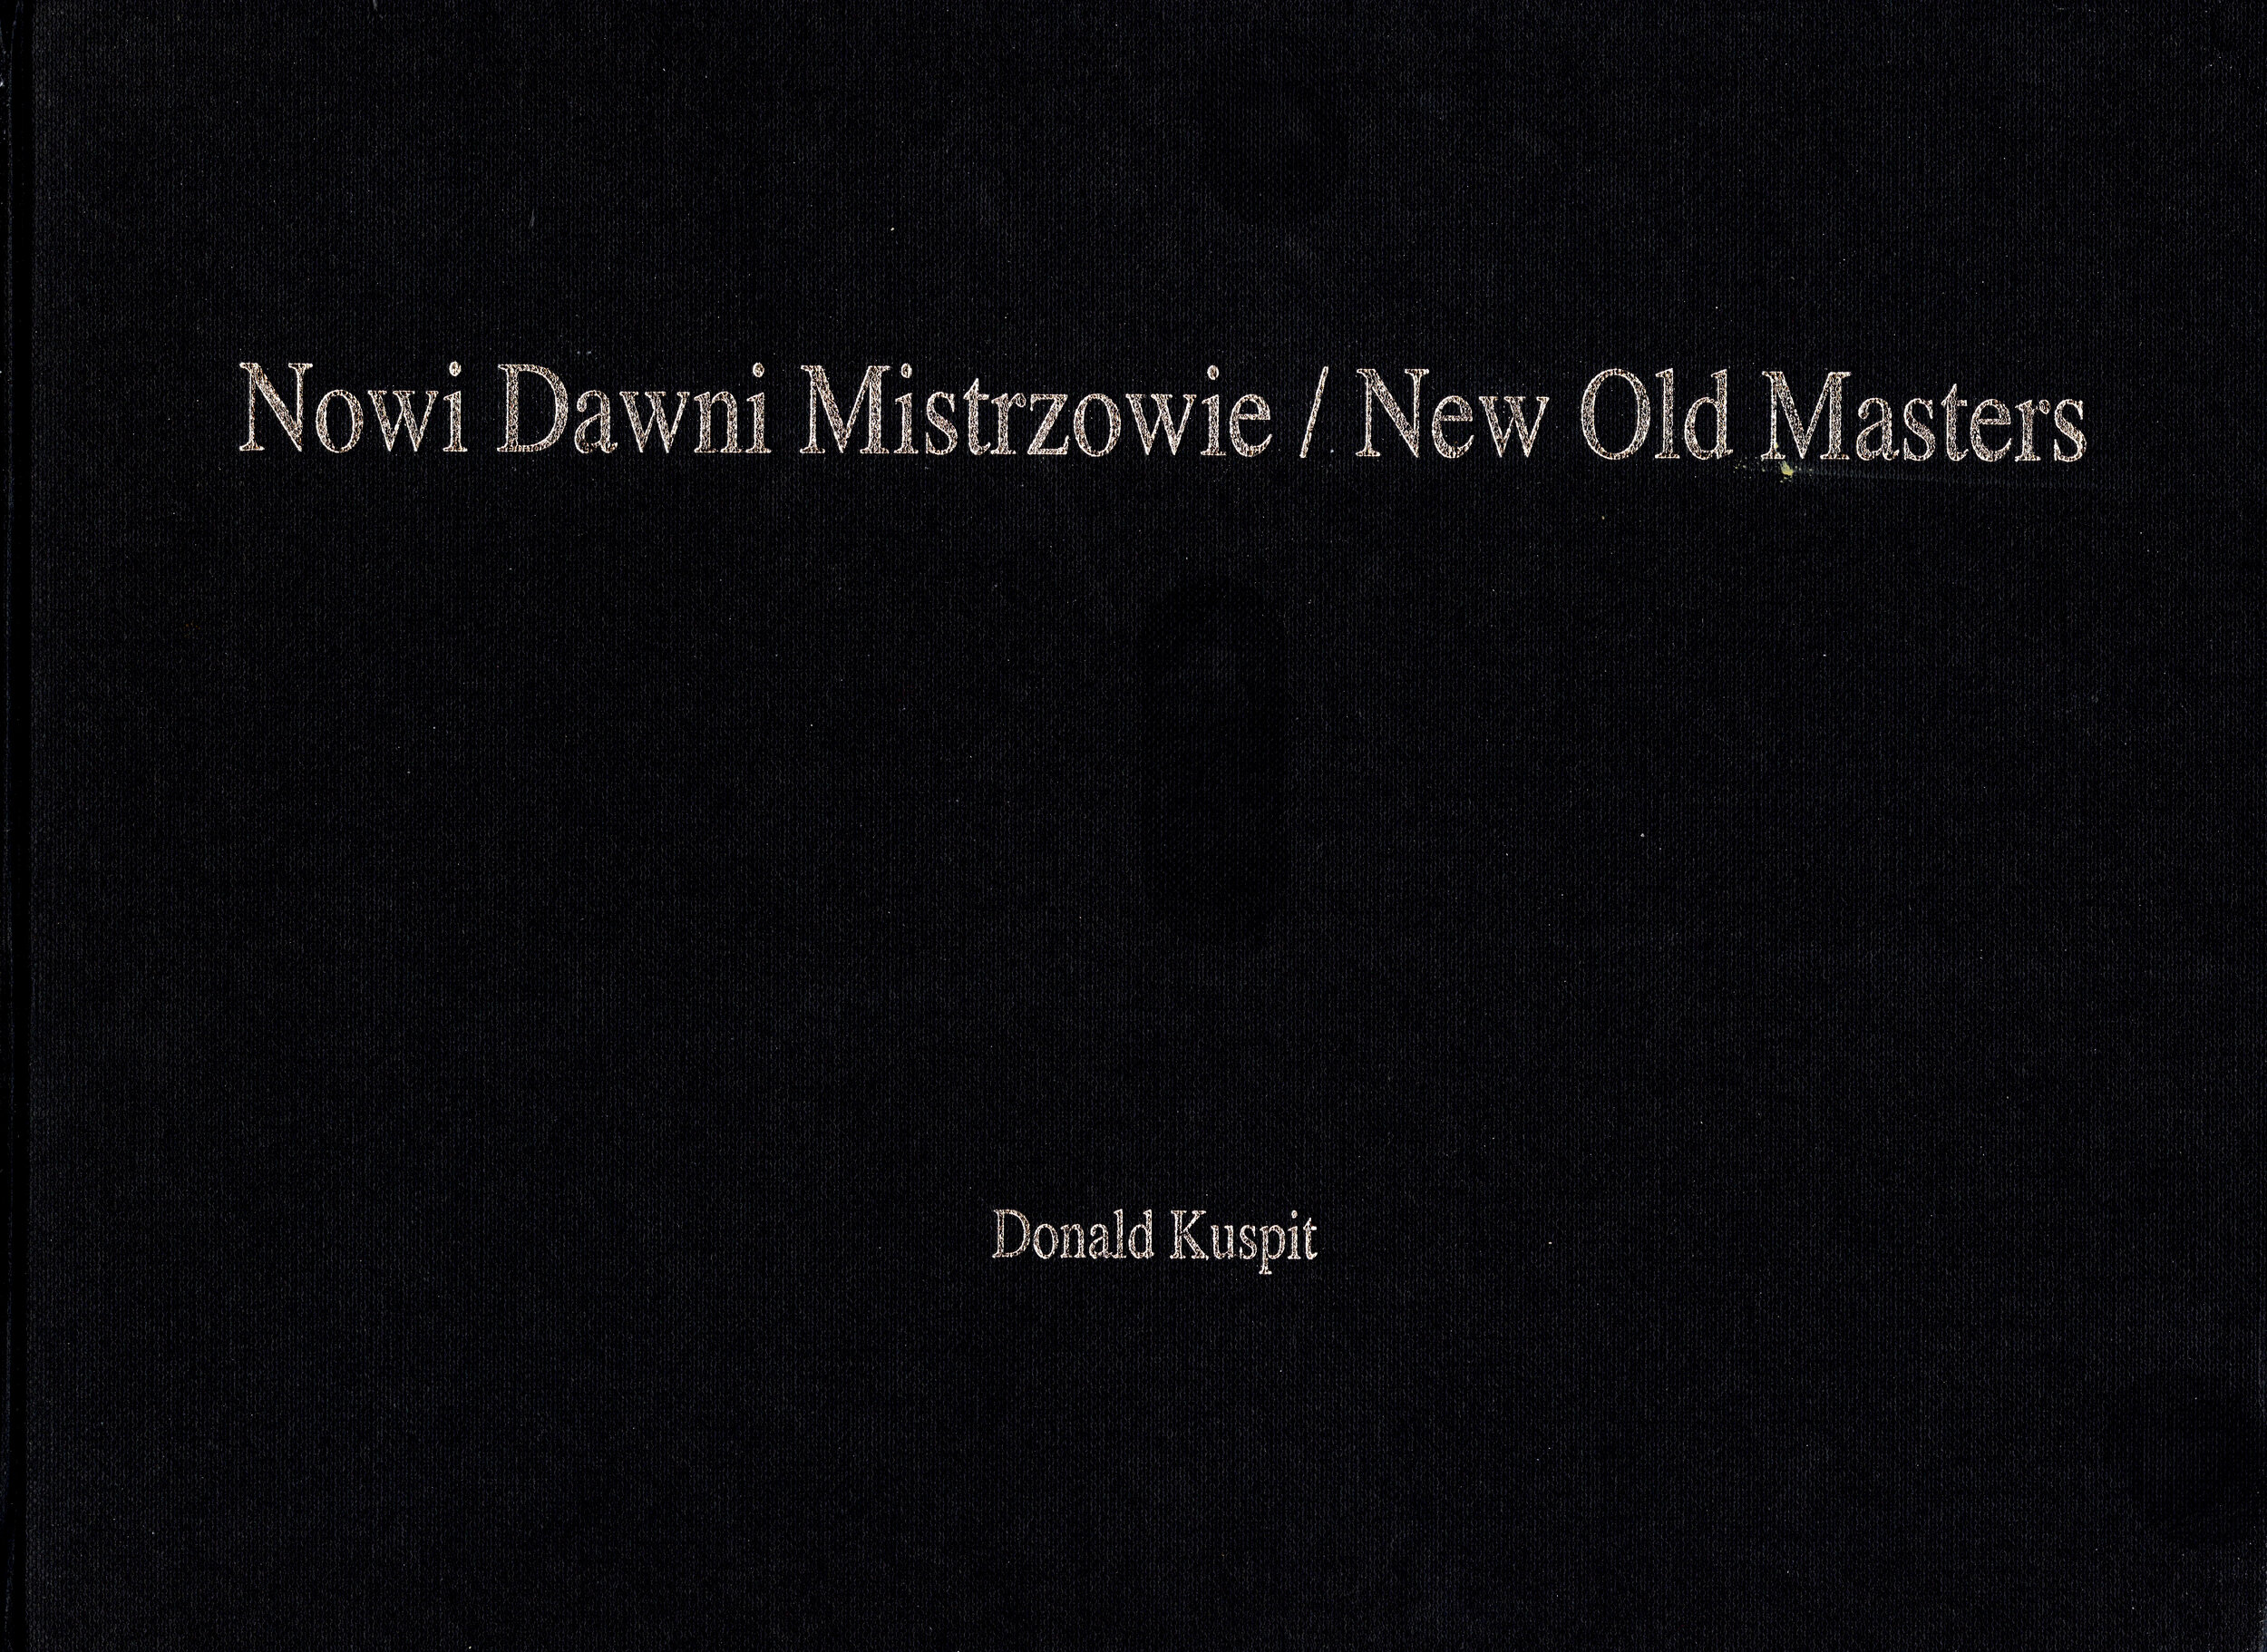 New Old Masters / Nowi Dawni Mistrzowie.  Essay by Donald Kuspit